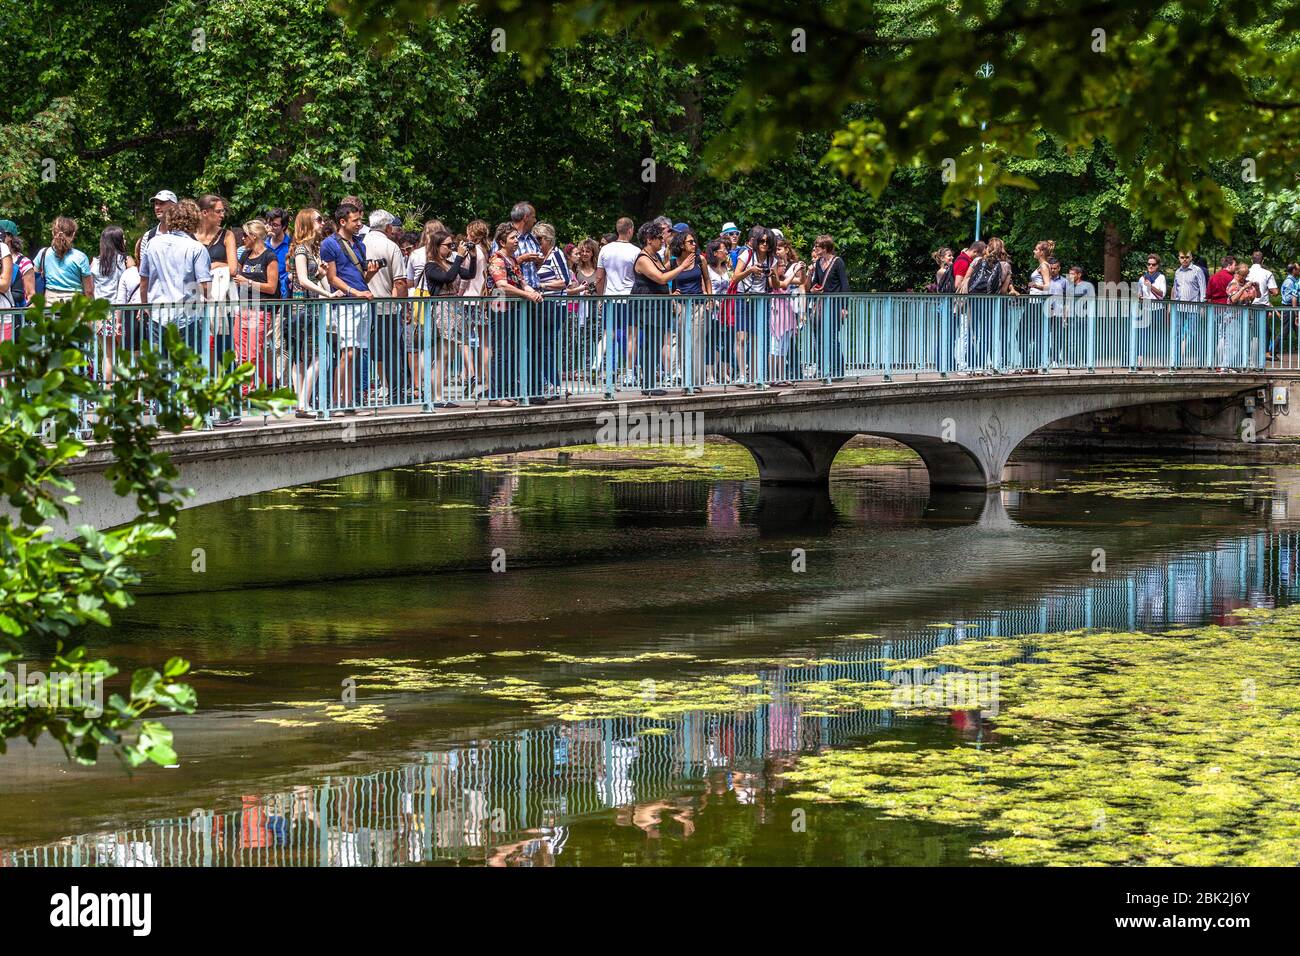 Il ponte pedonale del parco di St James è affollato di turisti e visitatori in una giornata estiva, Londra, Inghilterra, Regno Unito. Foto Stock